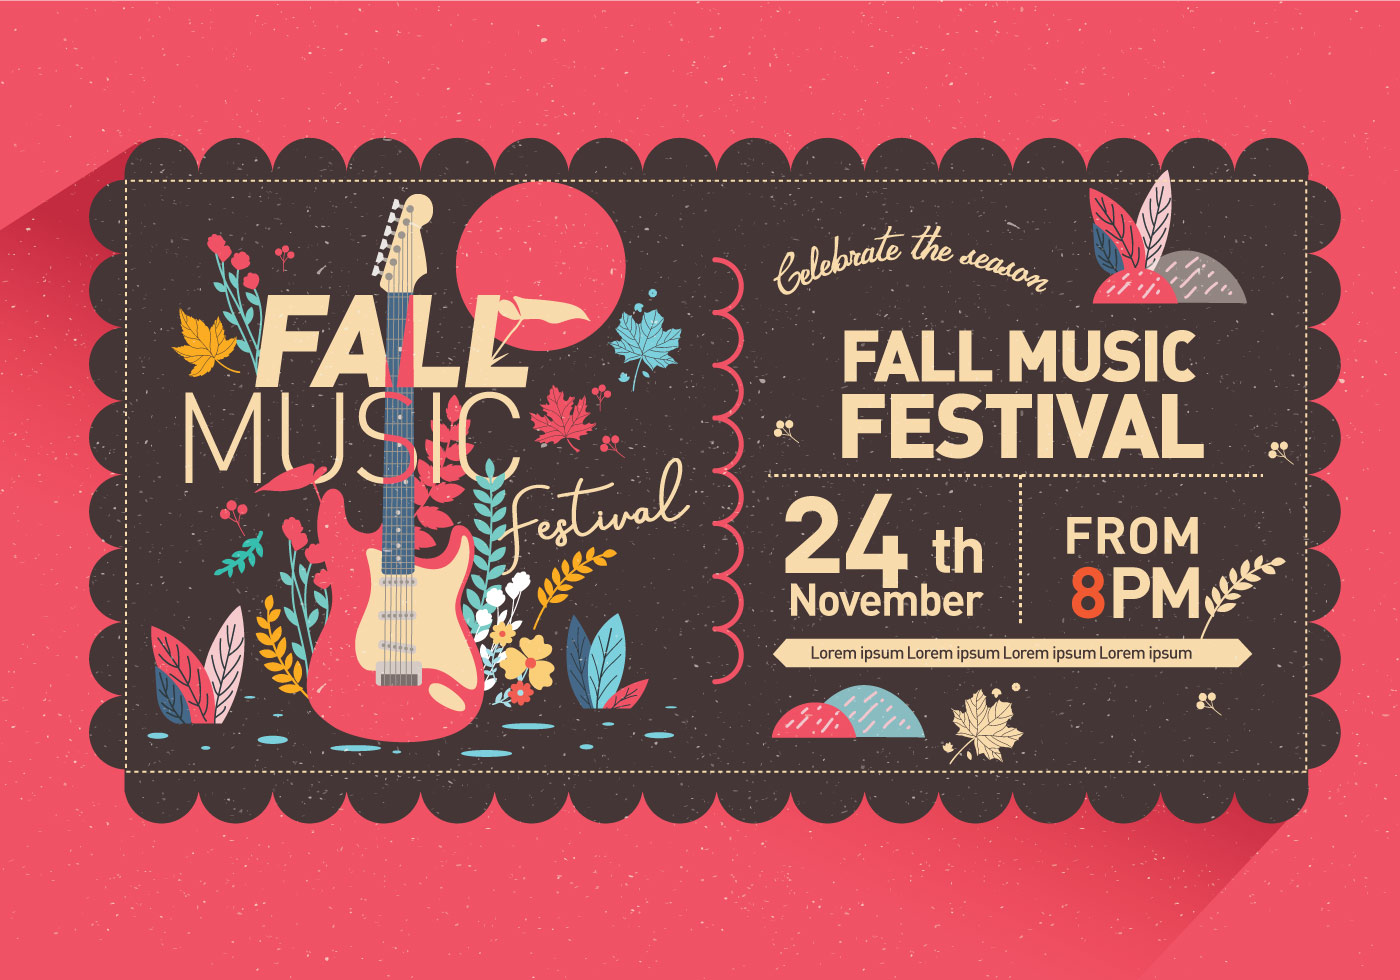 Fall Music Festival Invitation Vector - Download Free ...